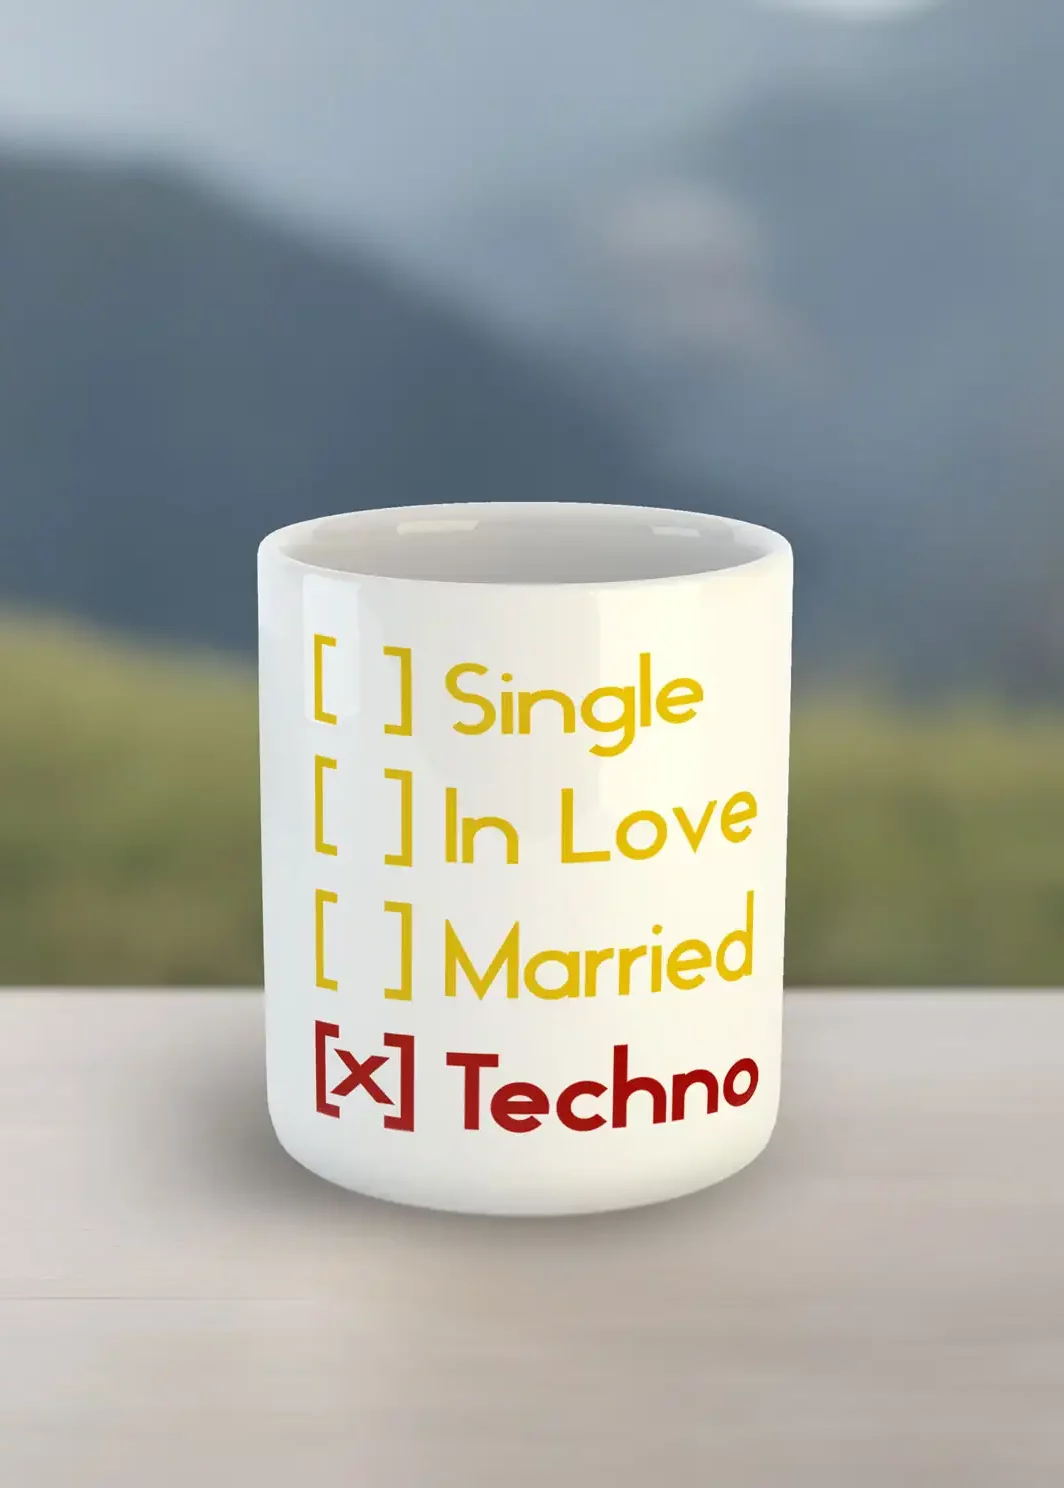 Eine Tasse mit einem Text zum ankreuzen Techno oder Single, Techno ist angekreuzt